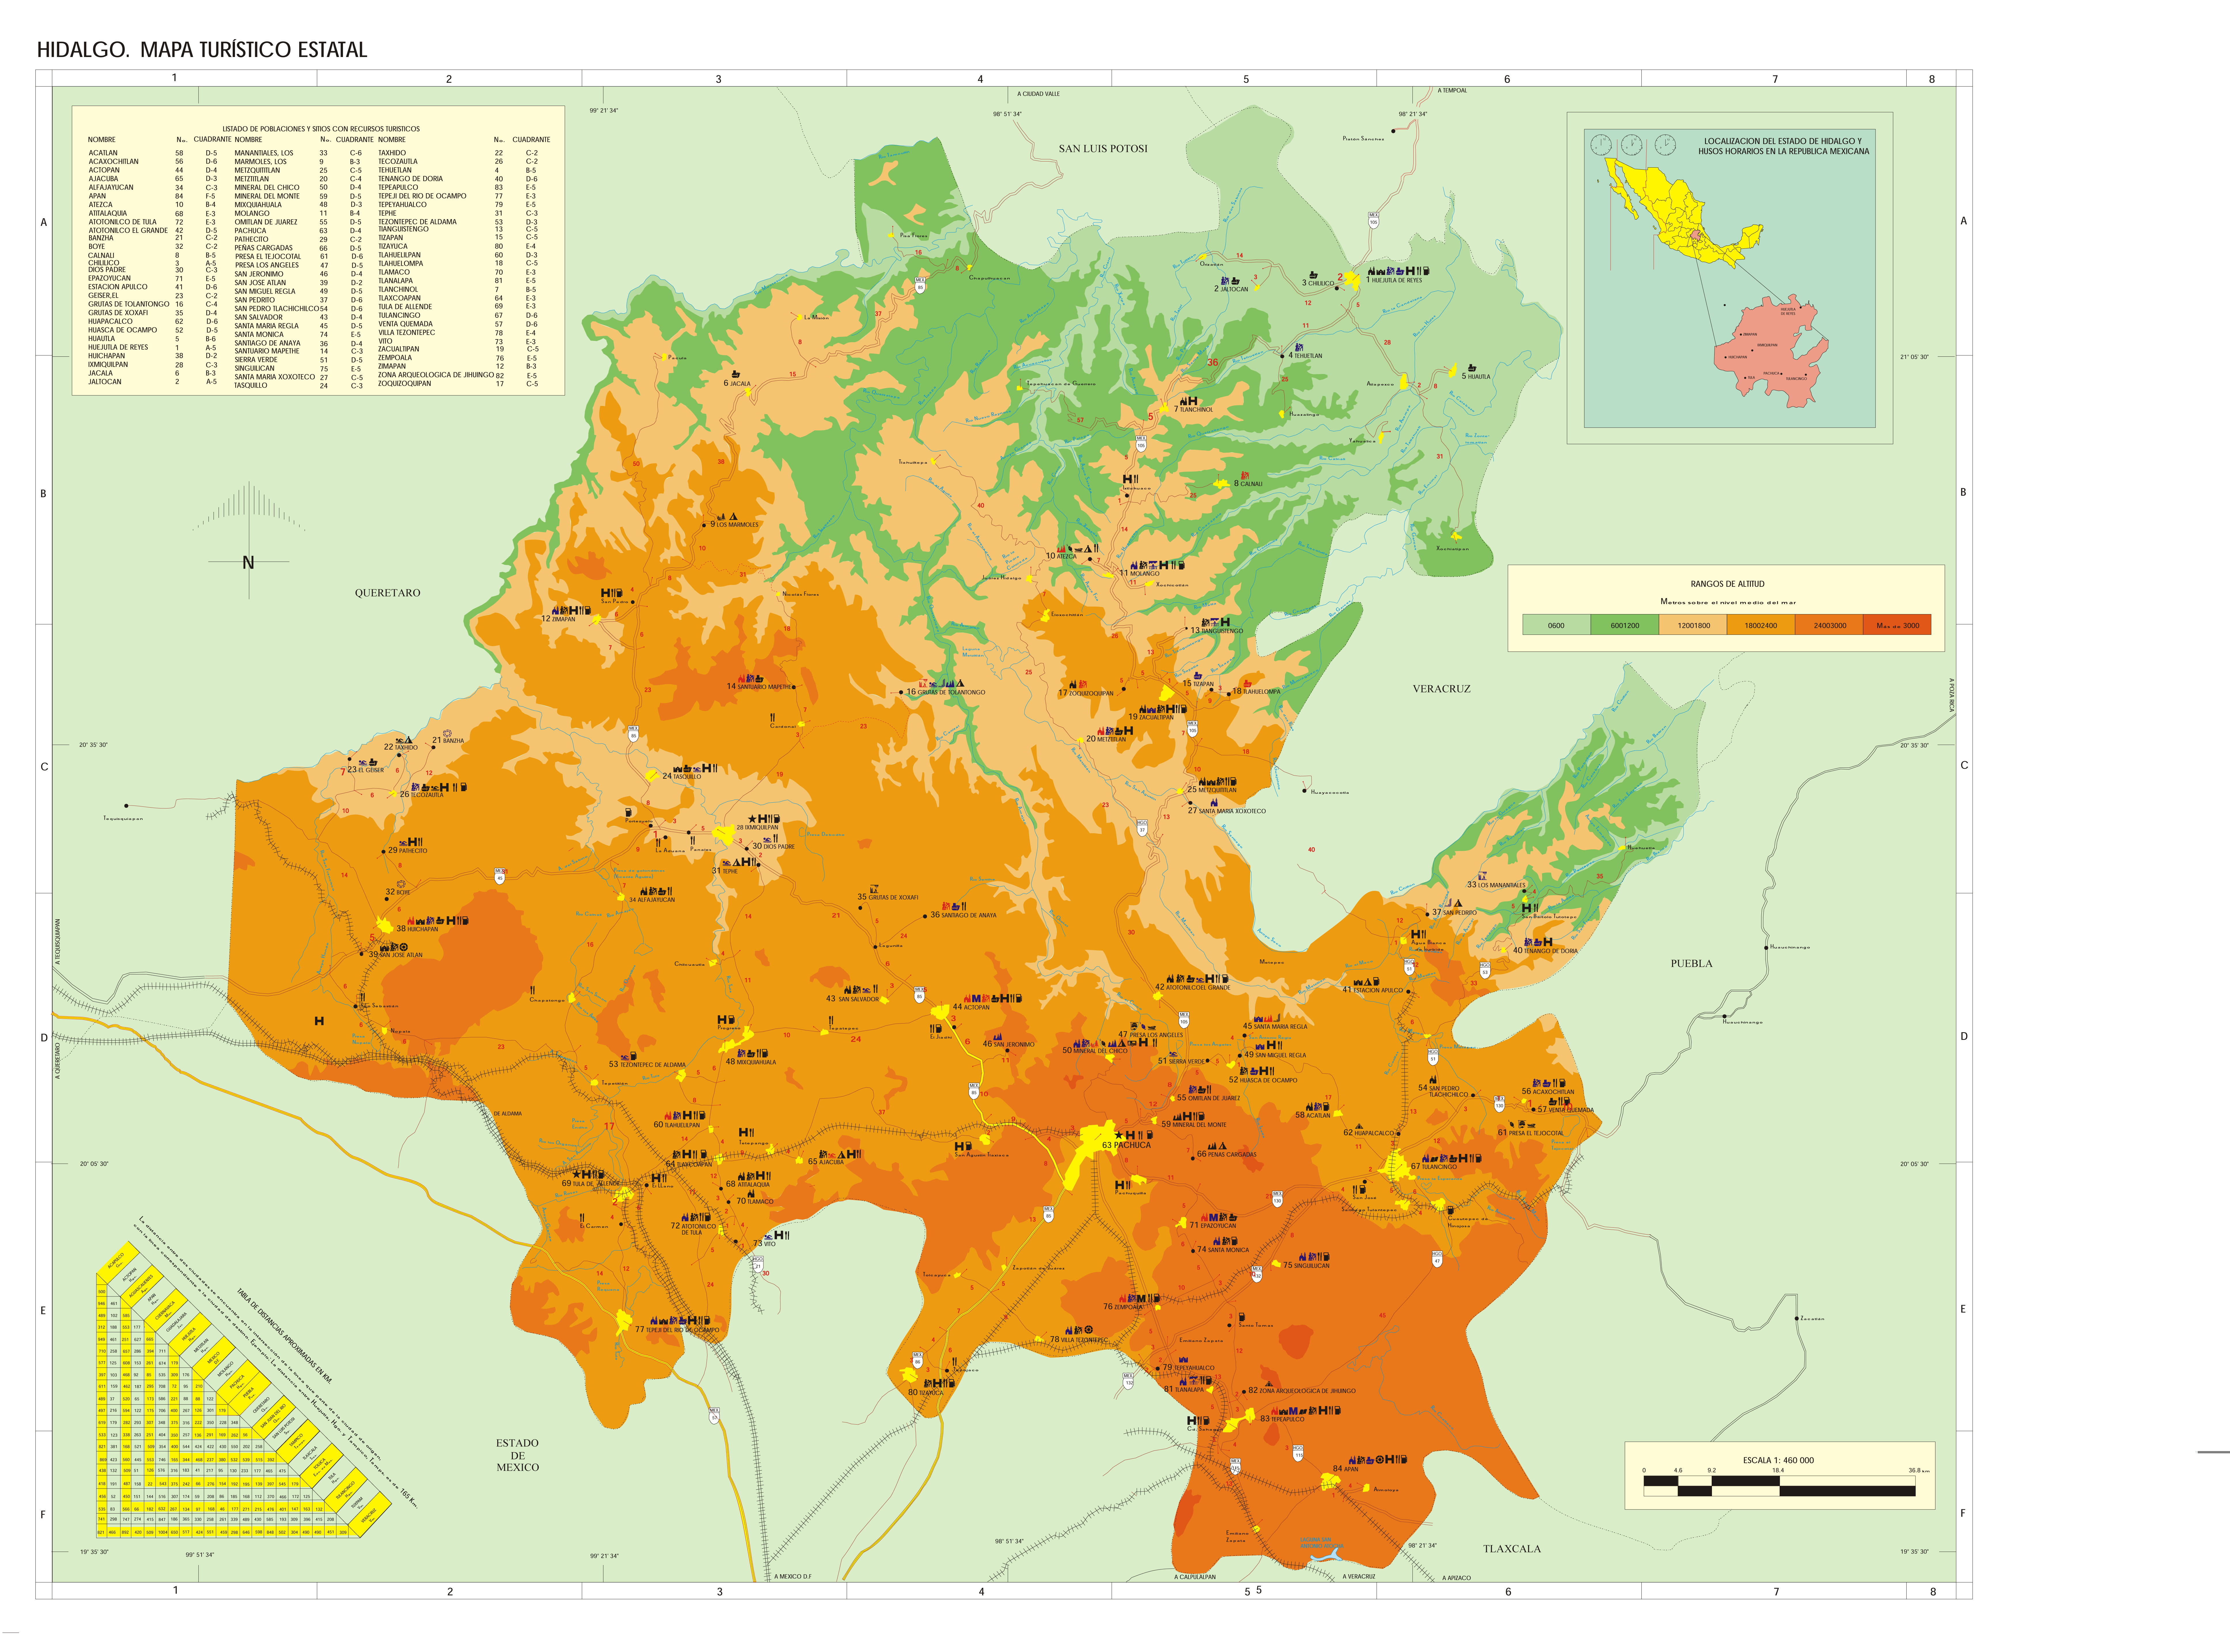 Map of Hidalgo - Full size | Gifex